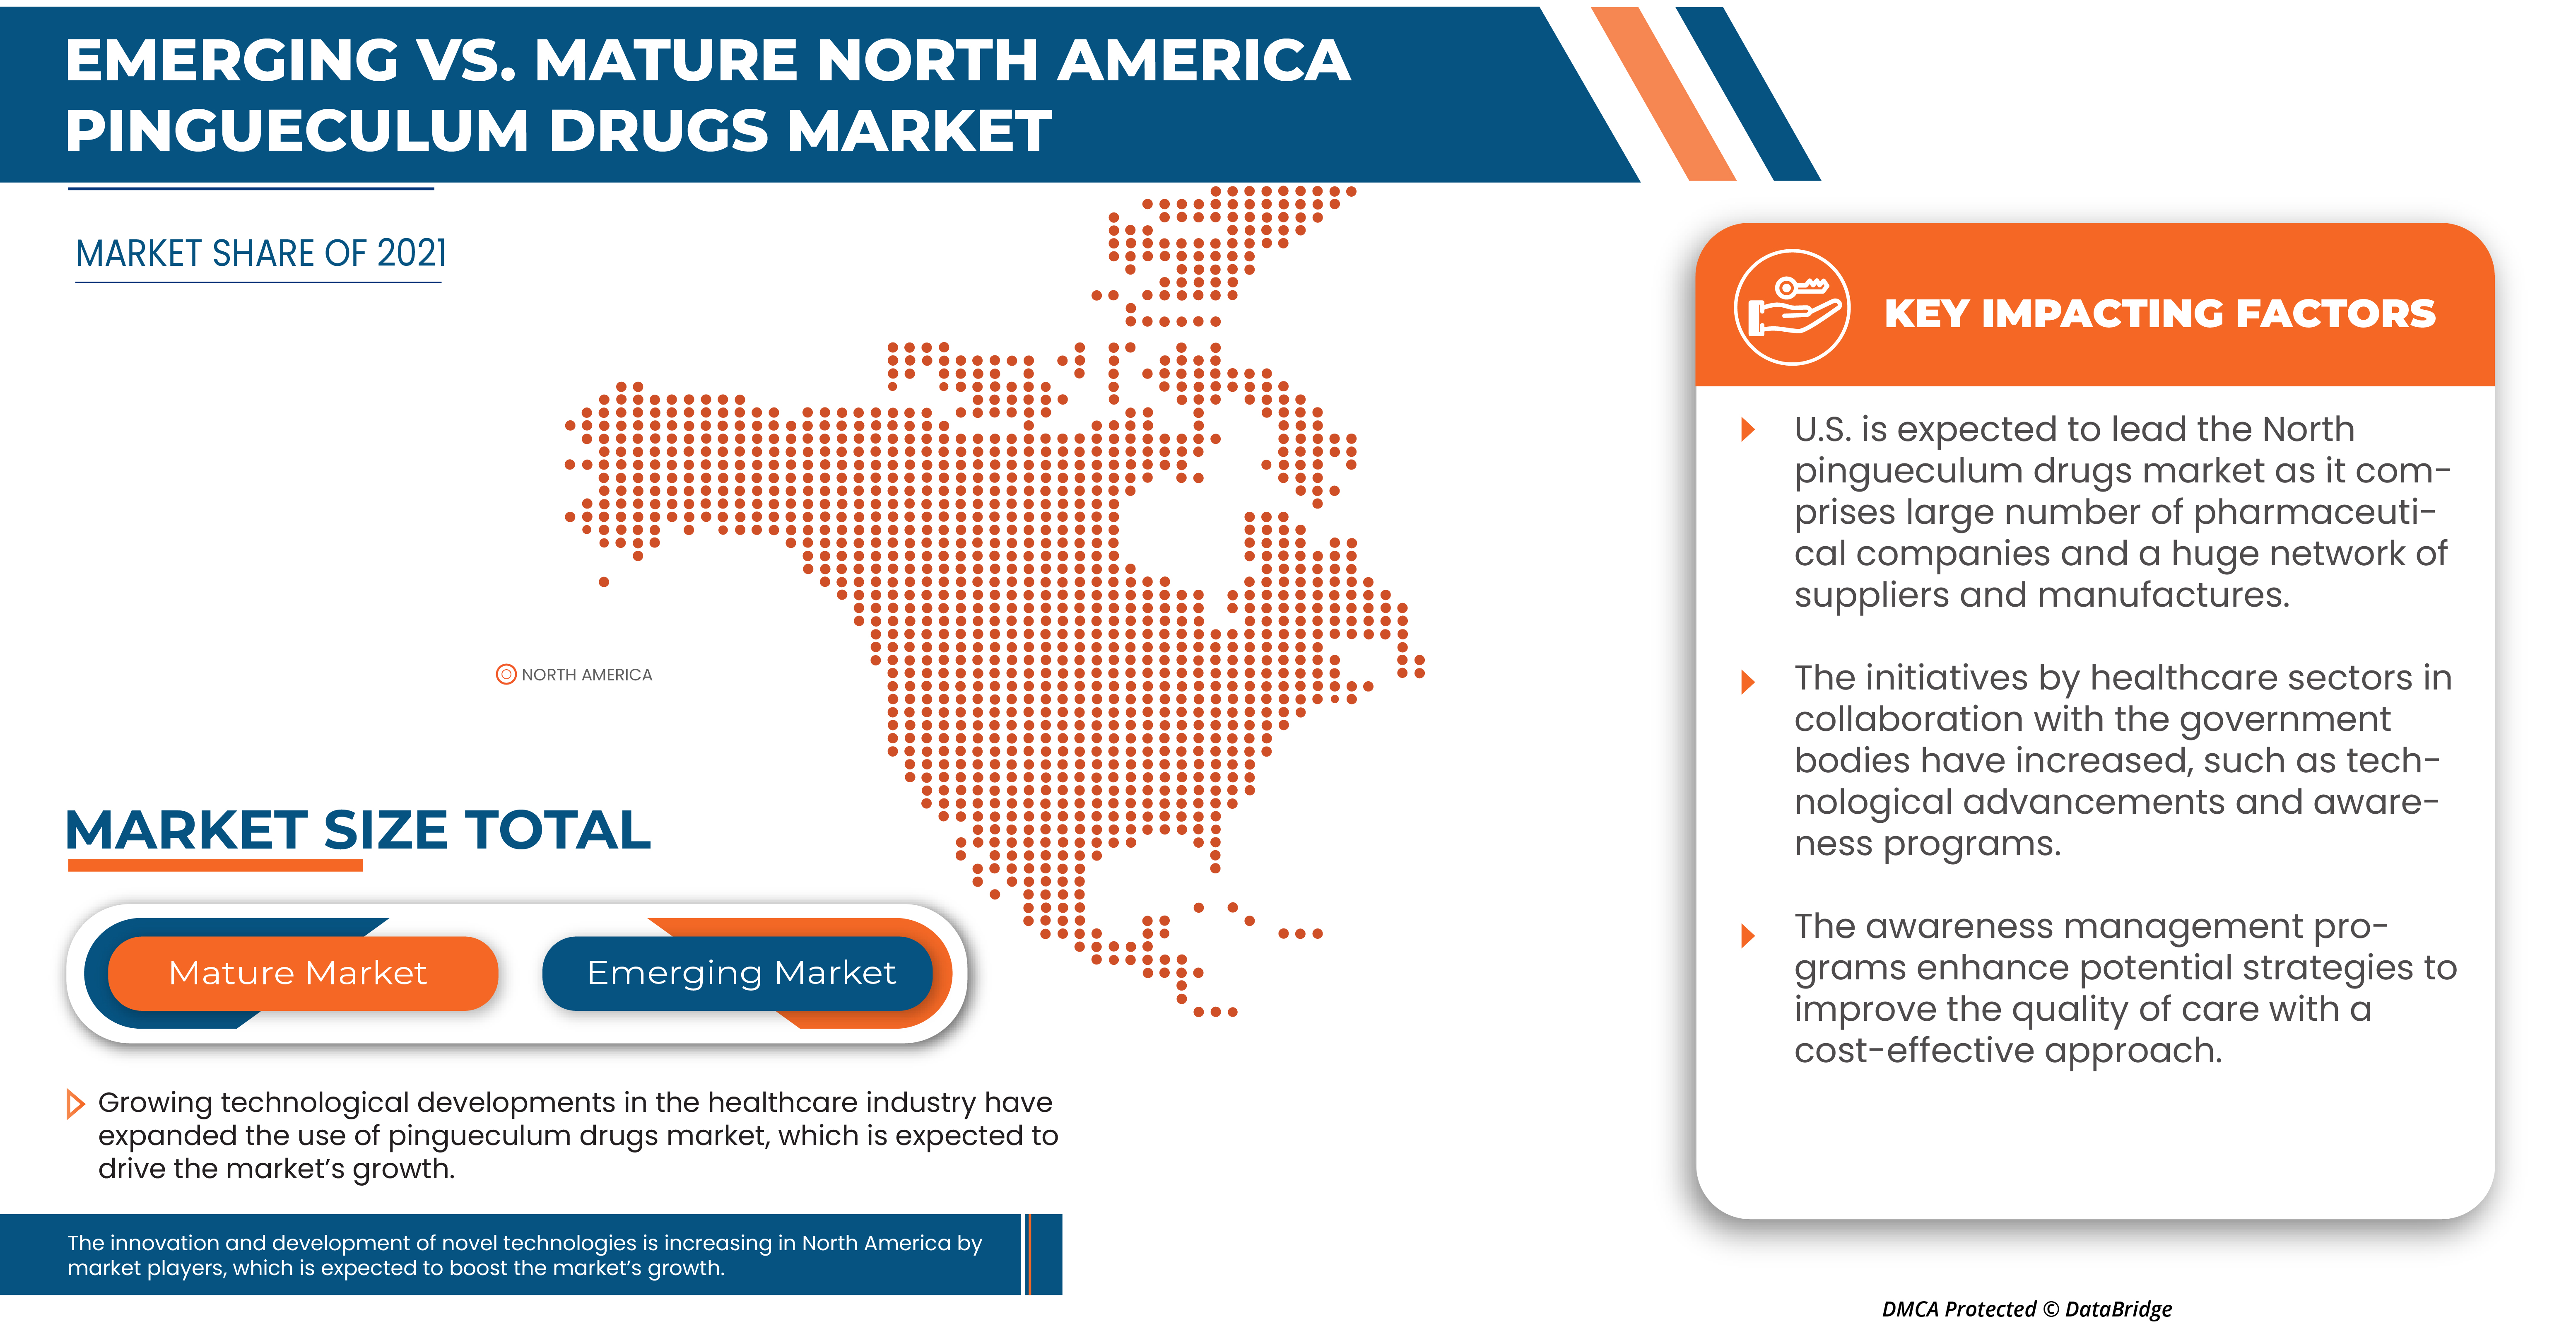 North America Pingueculum Drugs Market